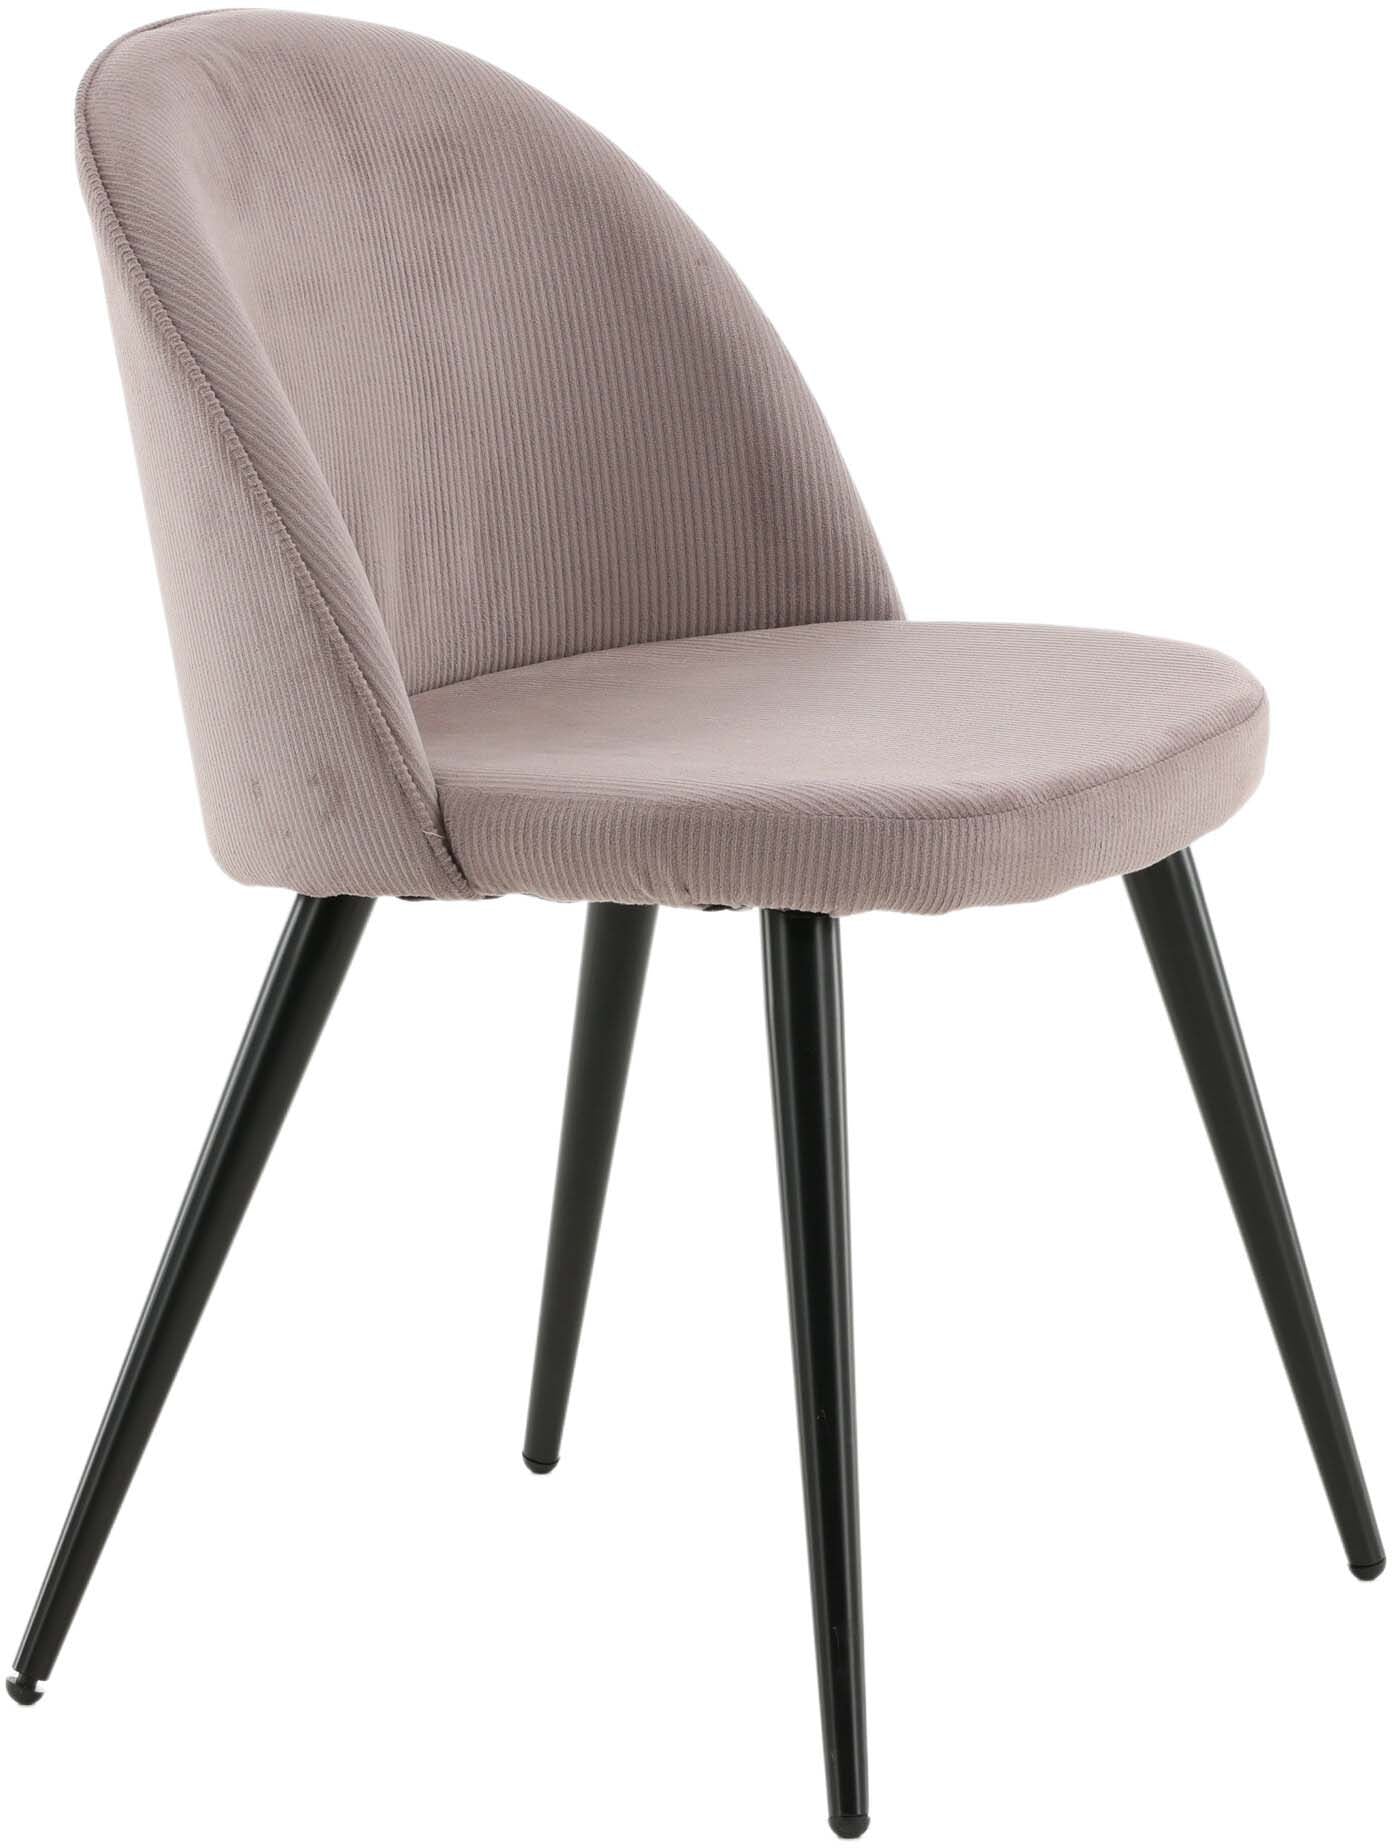 Velvet Matstol Manchester Stuhl in Altrosa / Schwarz präsentiert im Onlineshop von KAQTU Design AG. Schalenstuhl ist von Venture Home